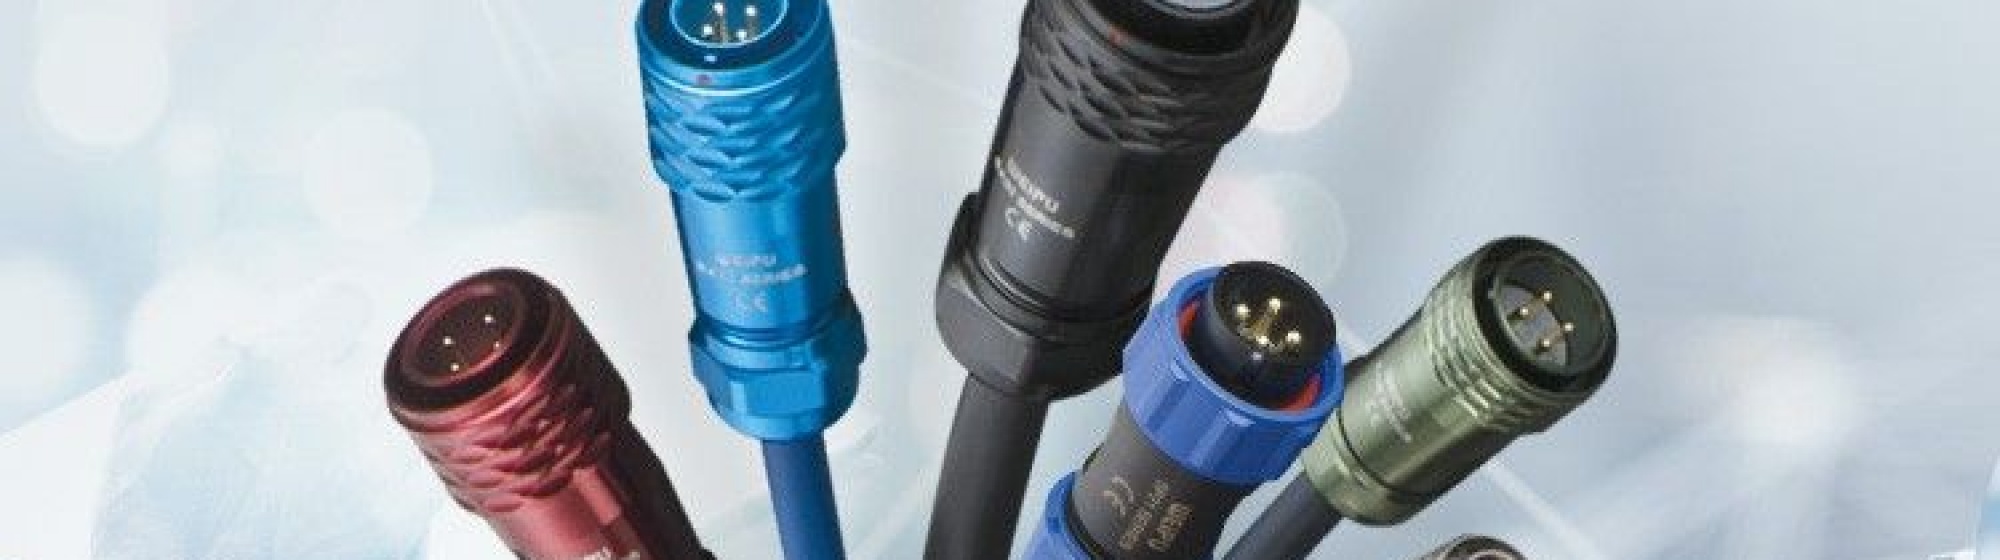 Connectique, cablage, cordons et limandes pour professionnels - Européenne de Composant Electroniques | ERCE sas